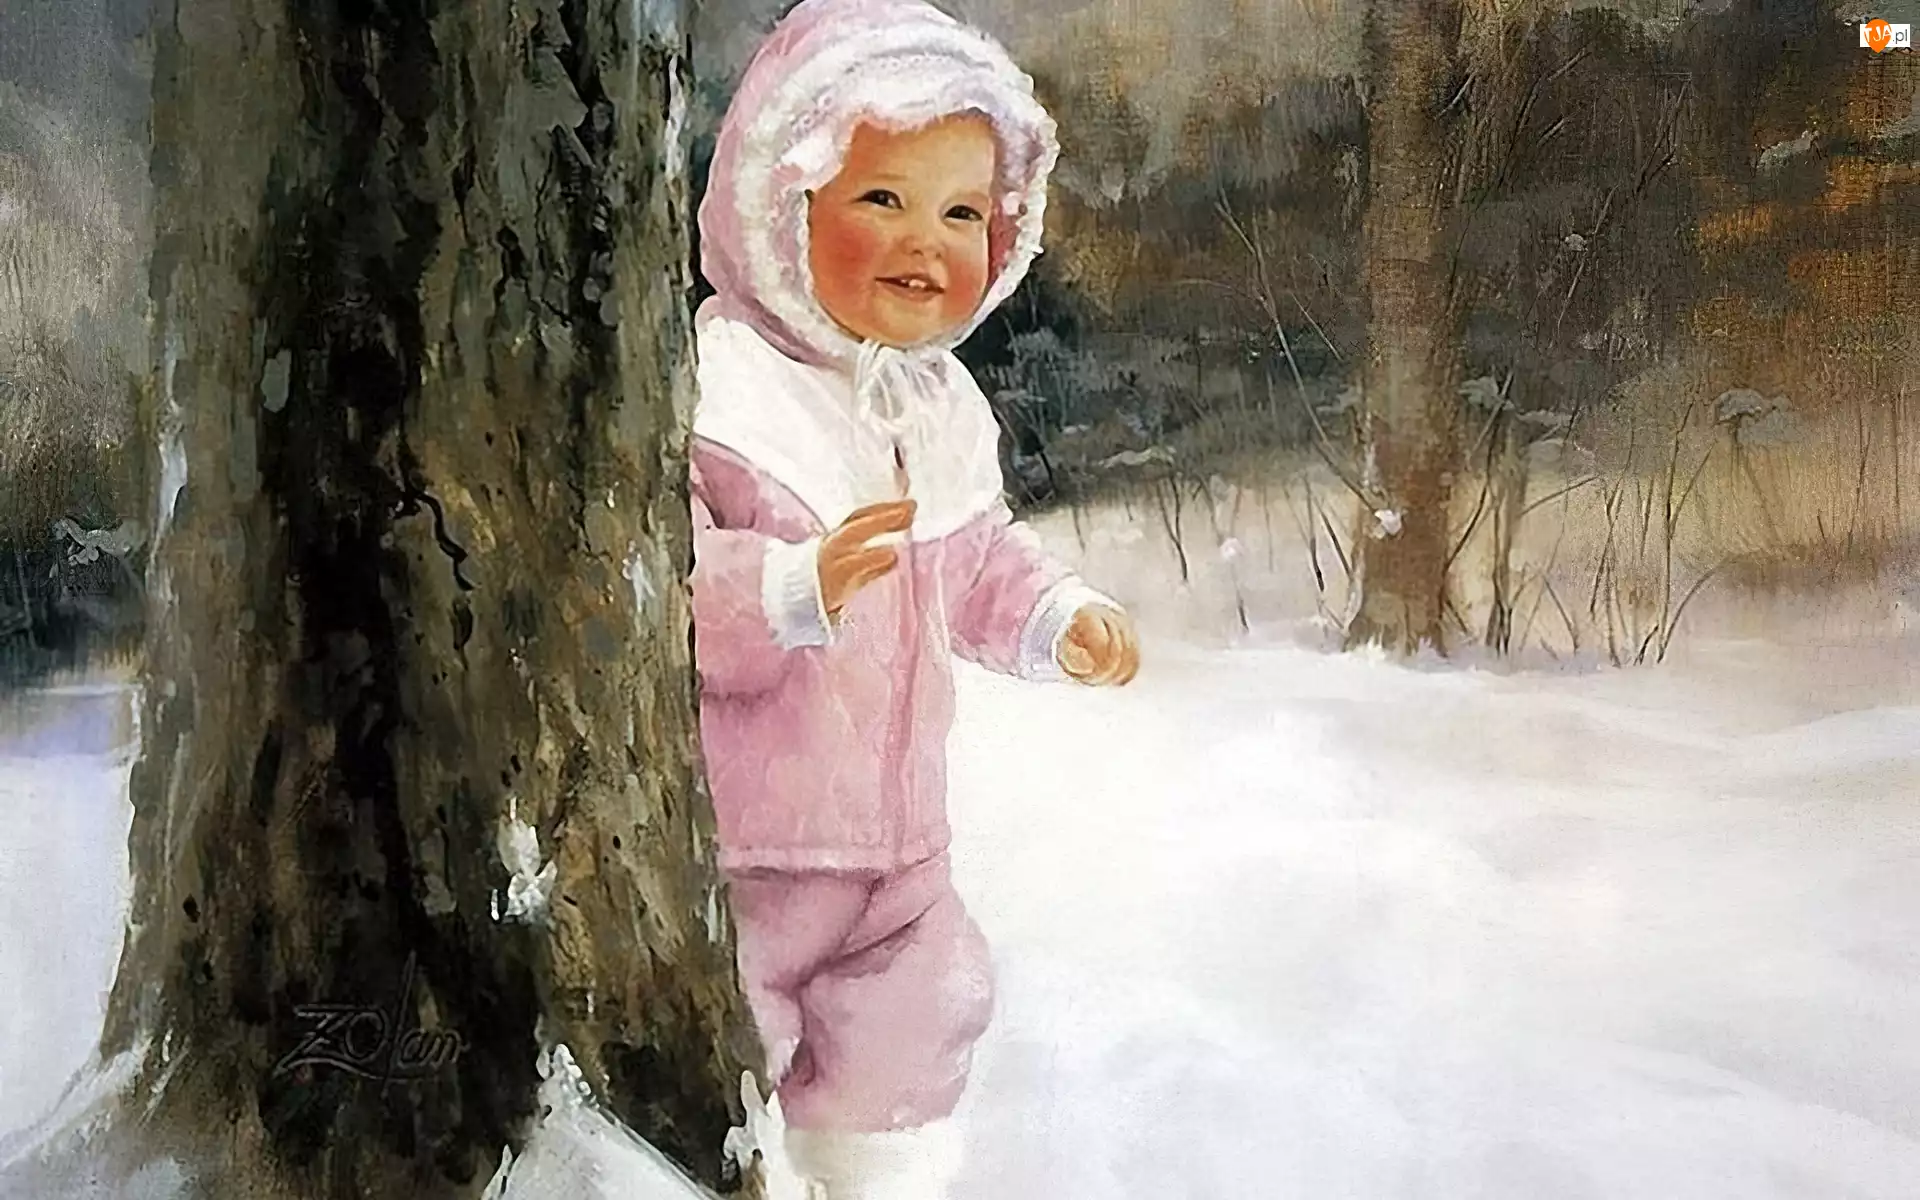 Śnieg, Zolan, Drzewo, Dziecko, Donald